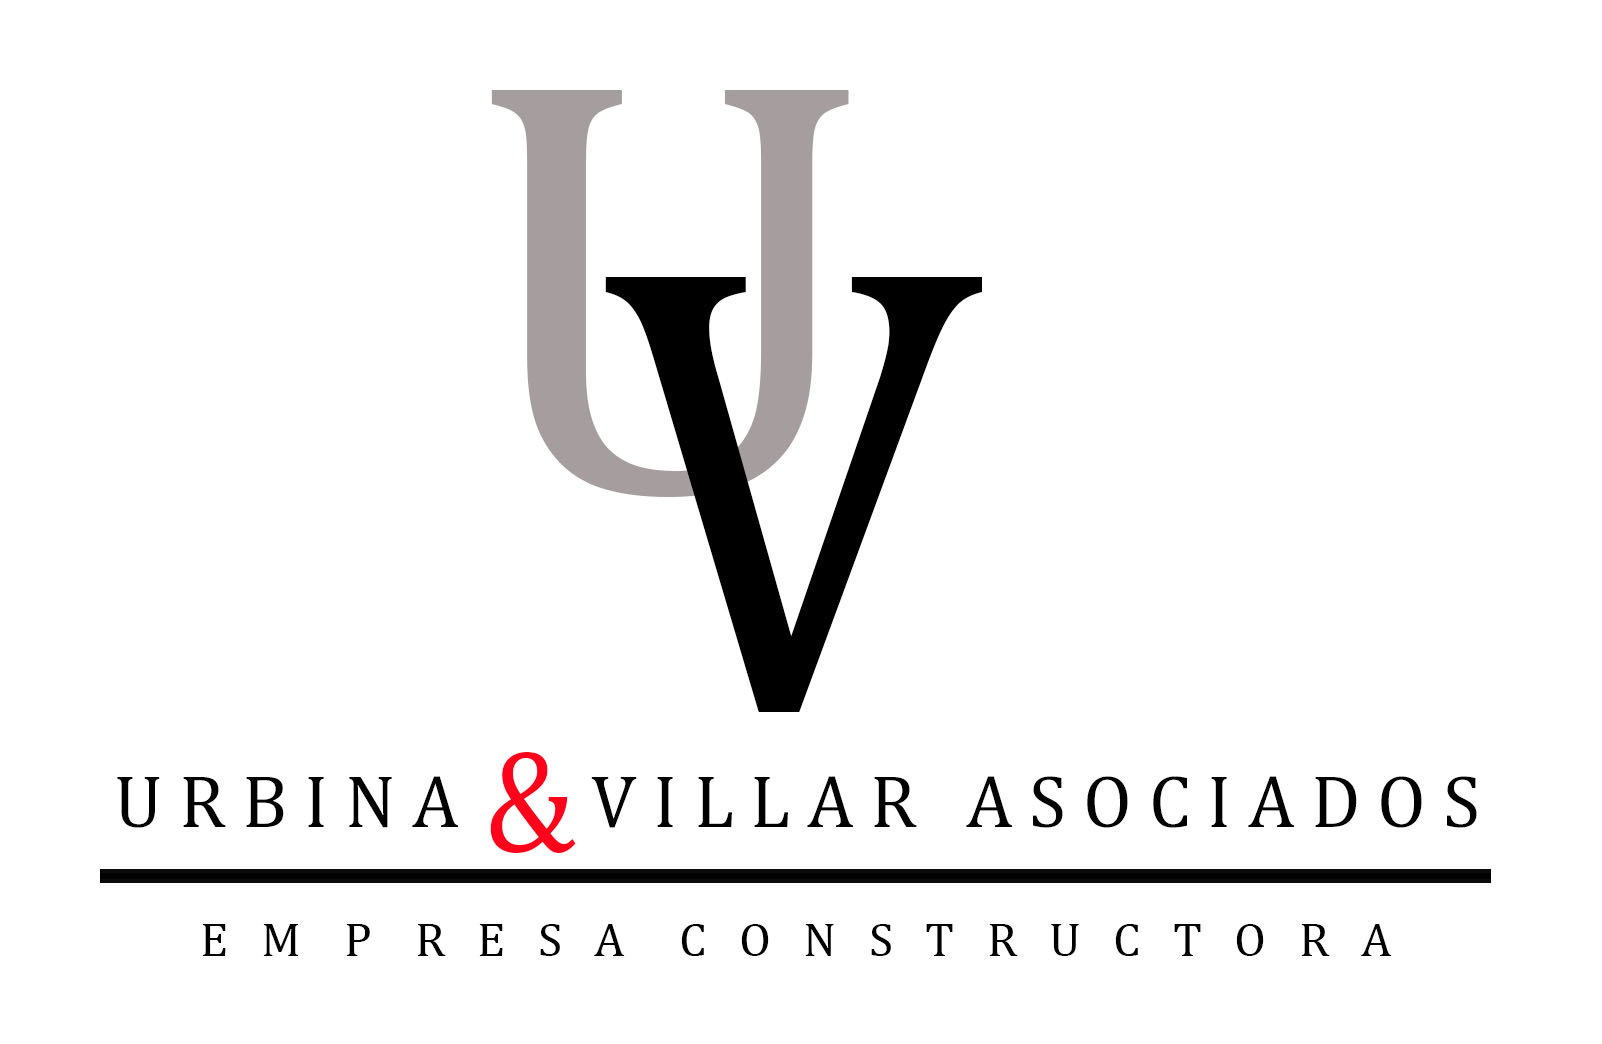 Urbina & Villar Asociados